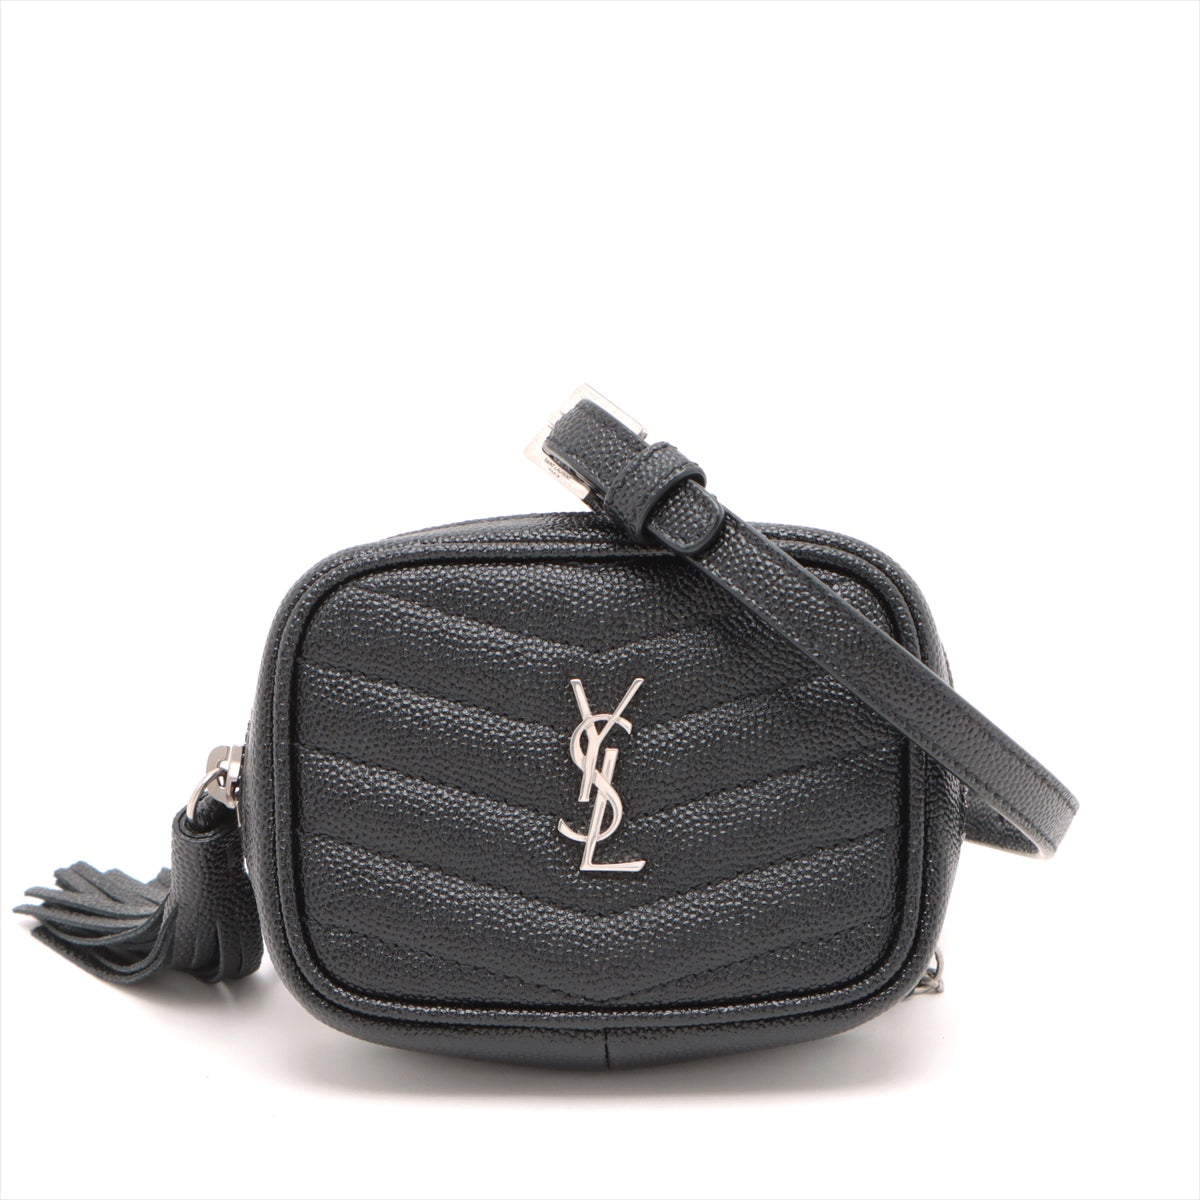 Saint Laurent Paris Baby Roux Leather Chain shoulder bag Black 657495